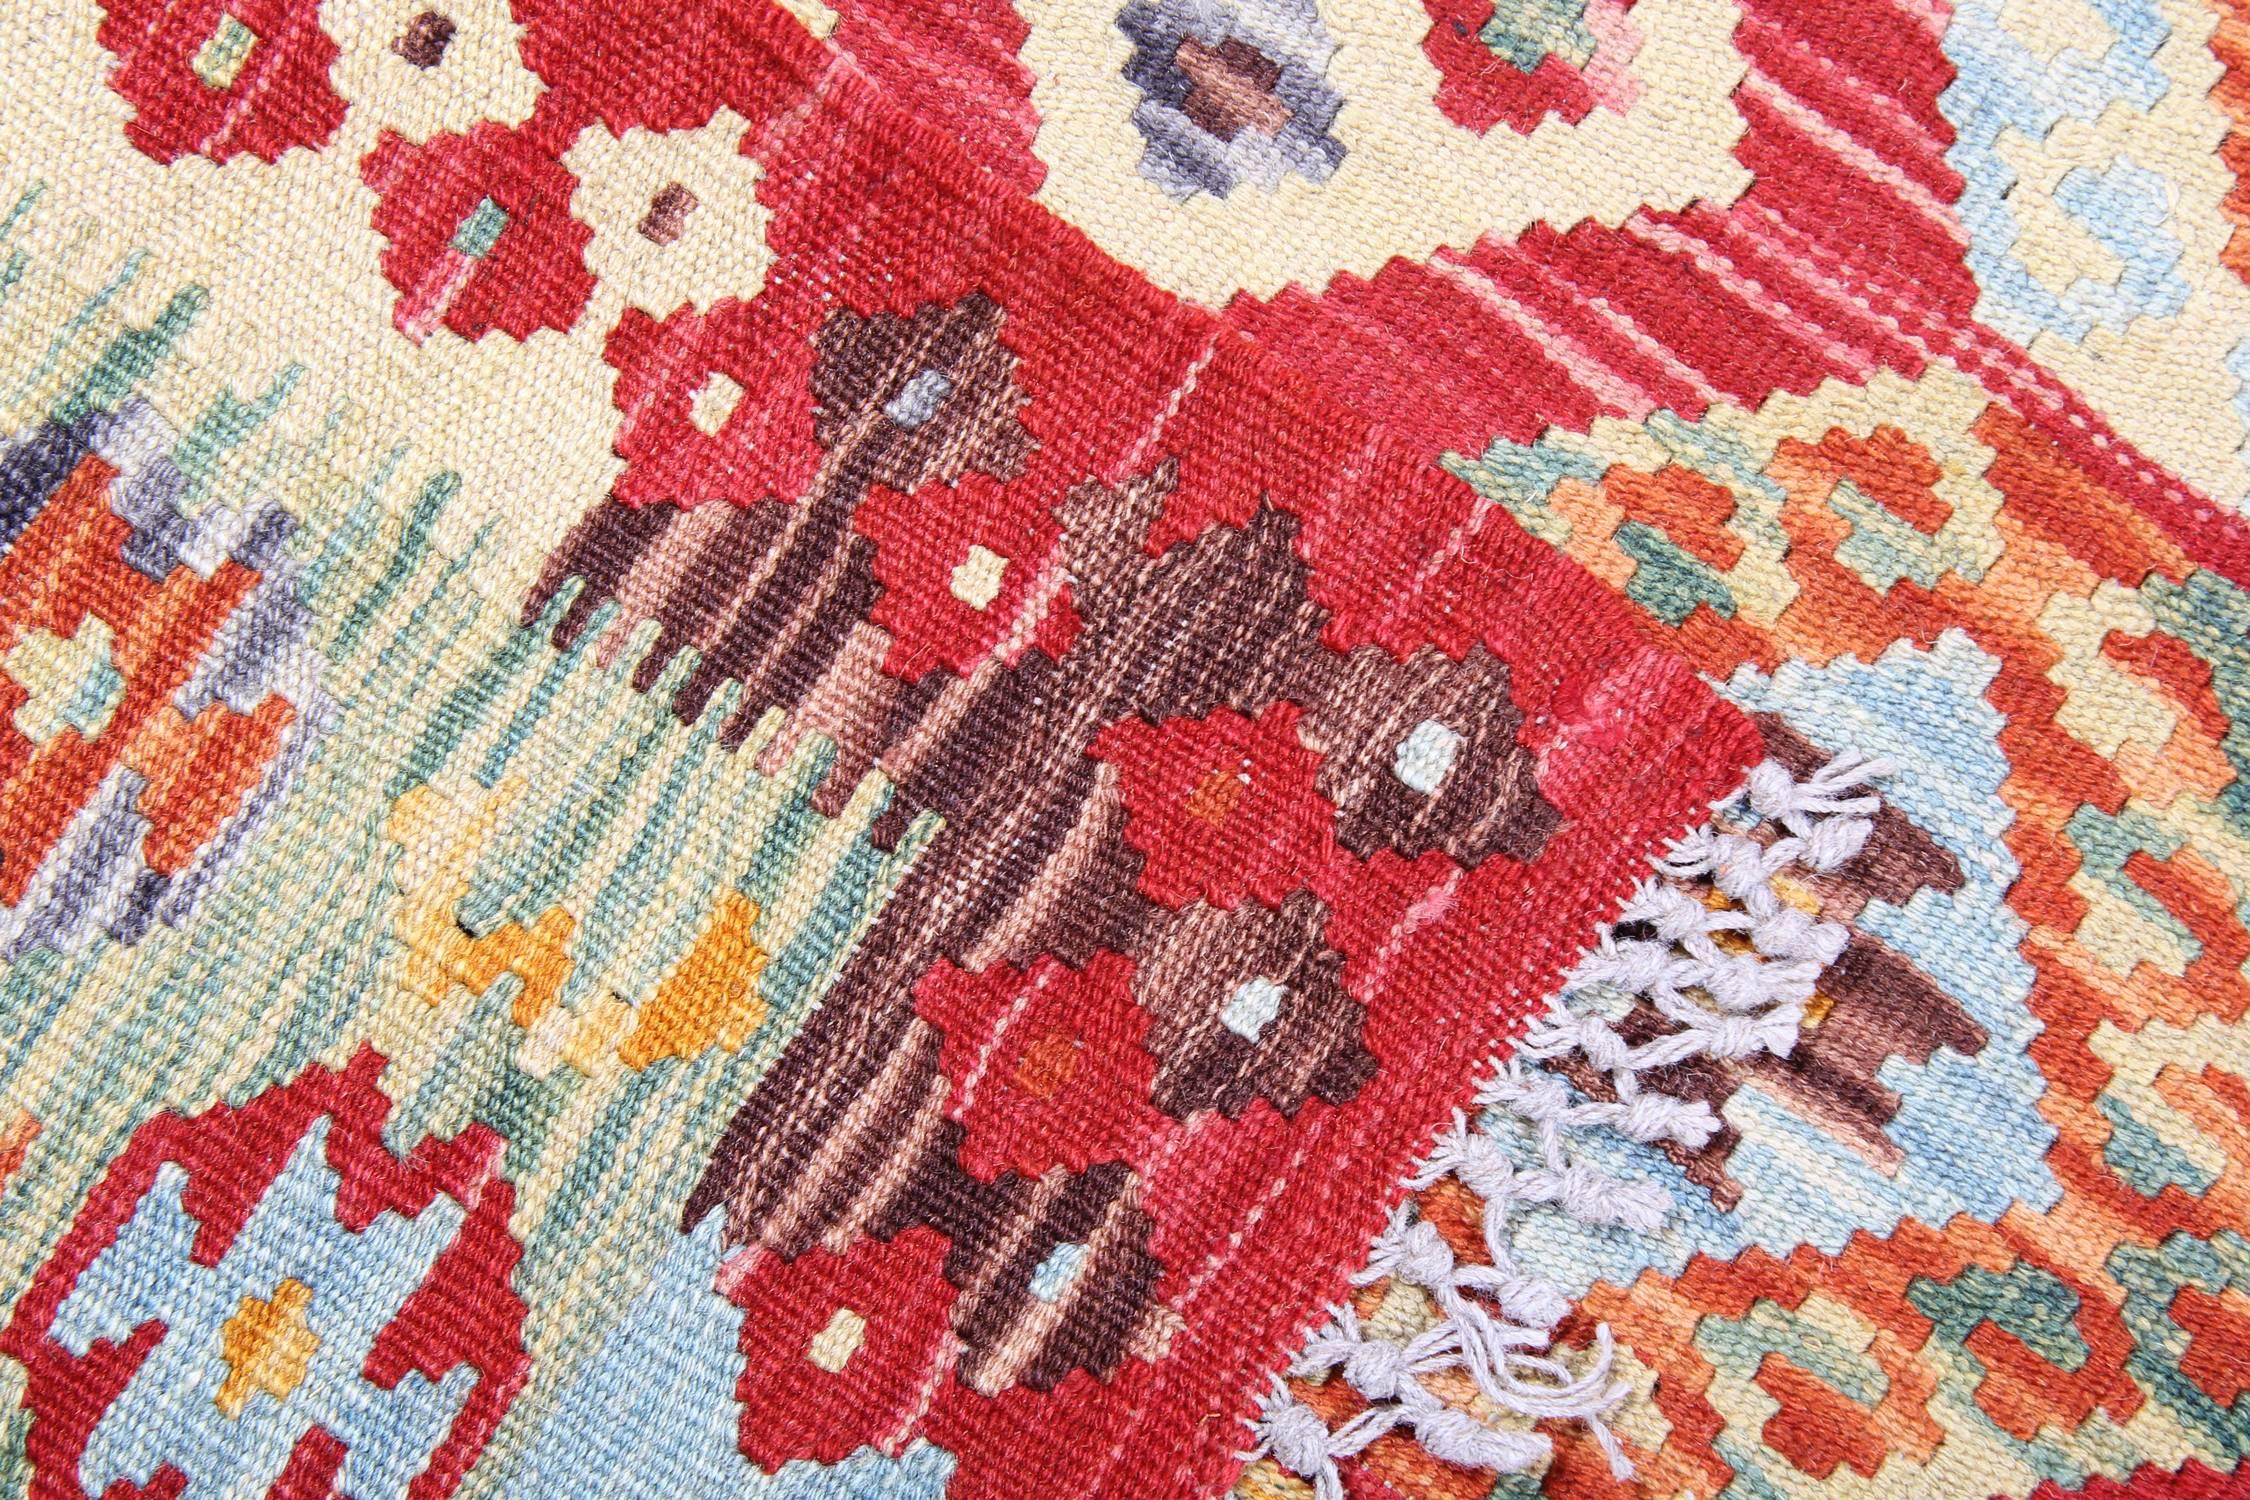 Hand-Woven Afghan Kilim Rug hand woven 